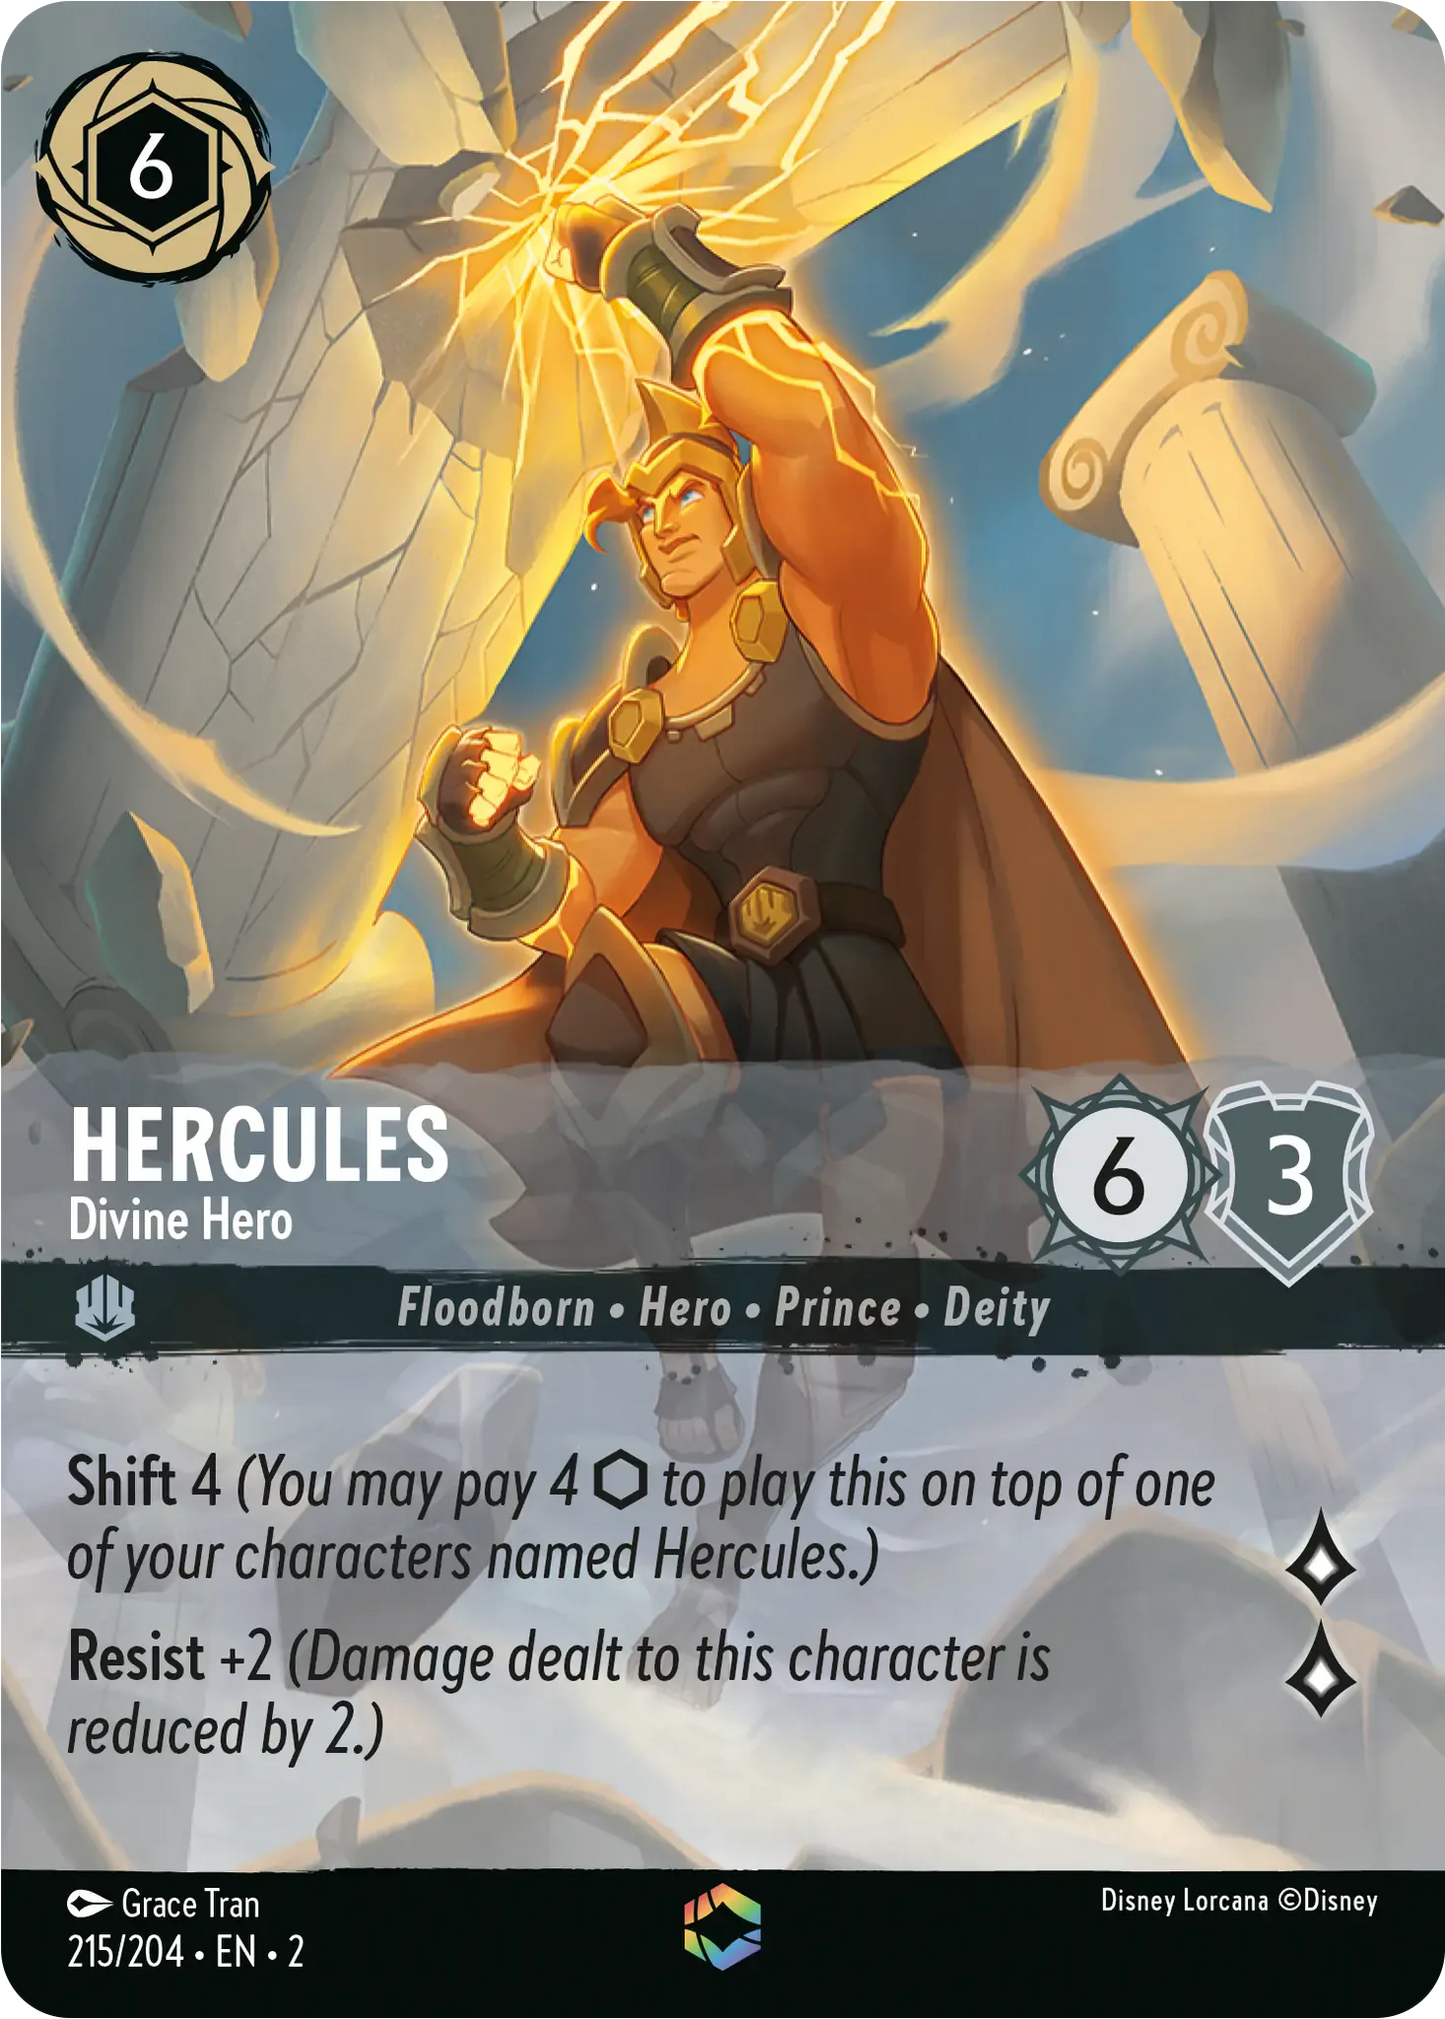 ヘラクレス - 神聖な英雄